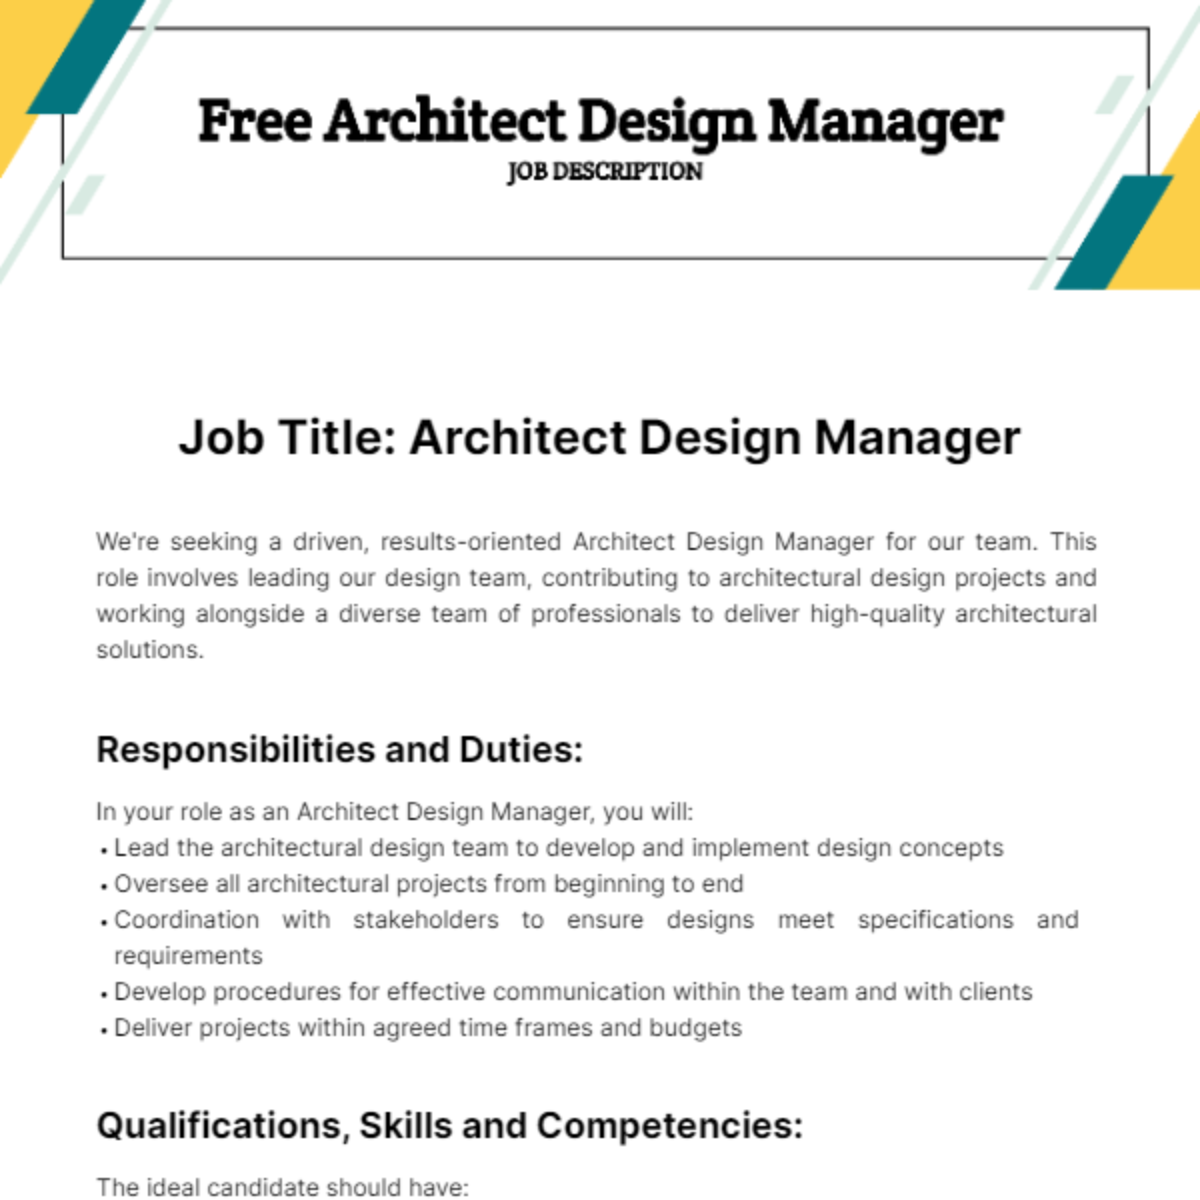 Architect Design Manager job Description Template